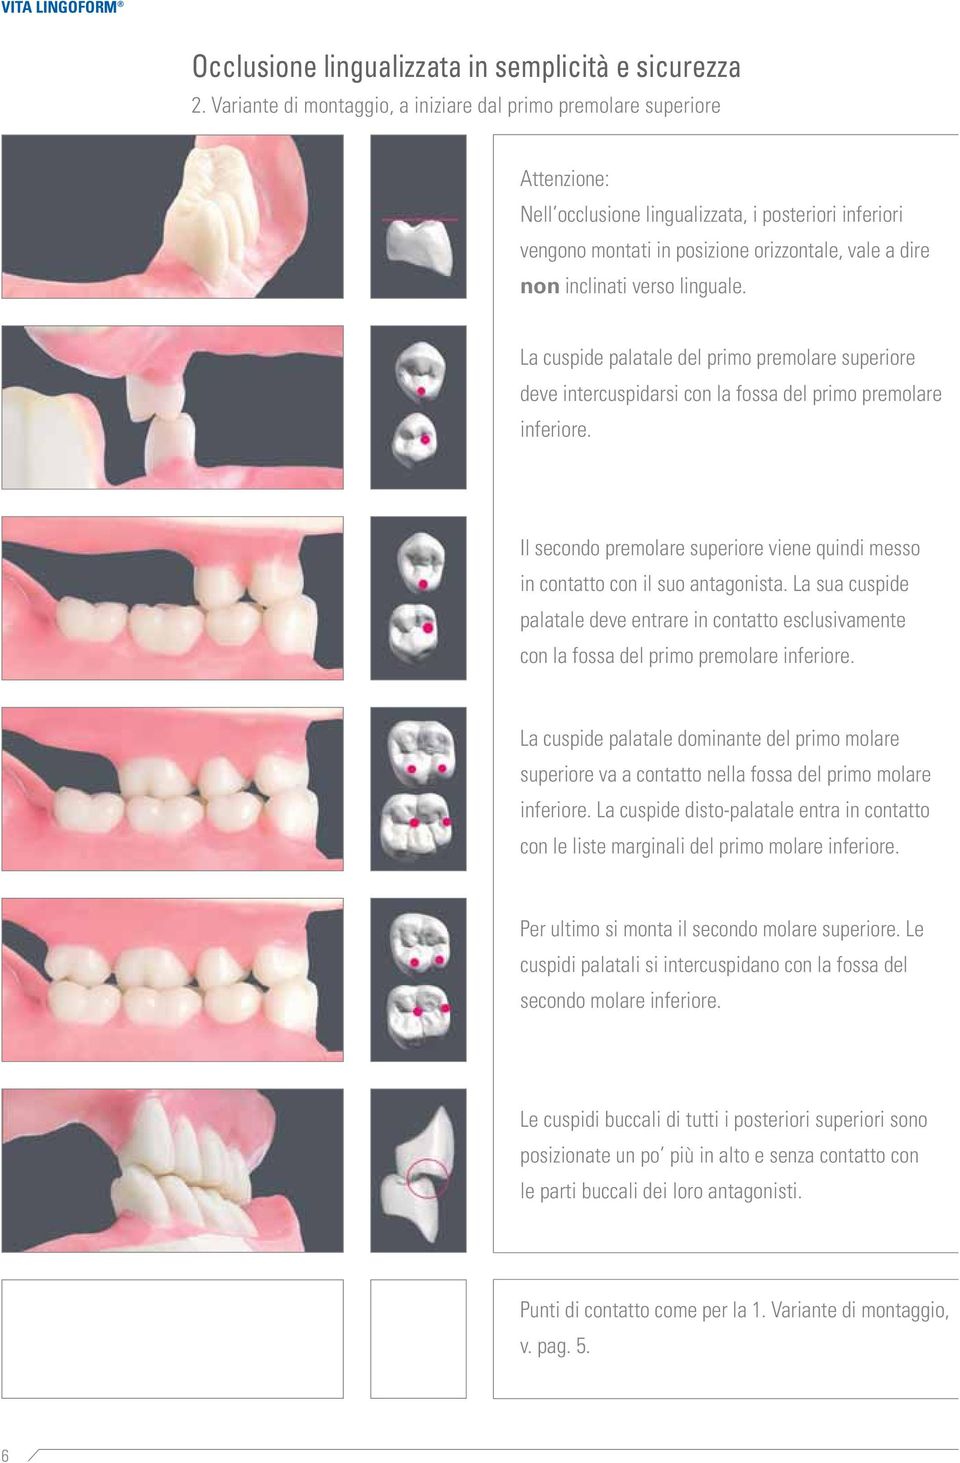 verso linguale. La cuspide palatale del primo premolare superiore deve intercuspidarsi con la fossa del primo premolare inferiore.